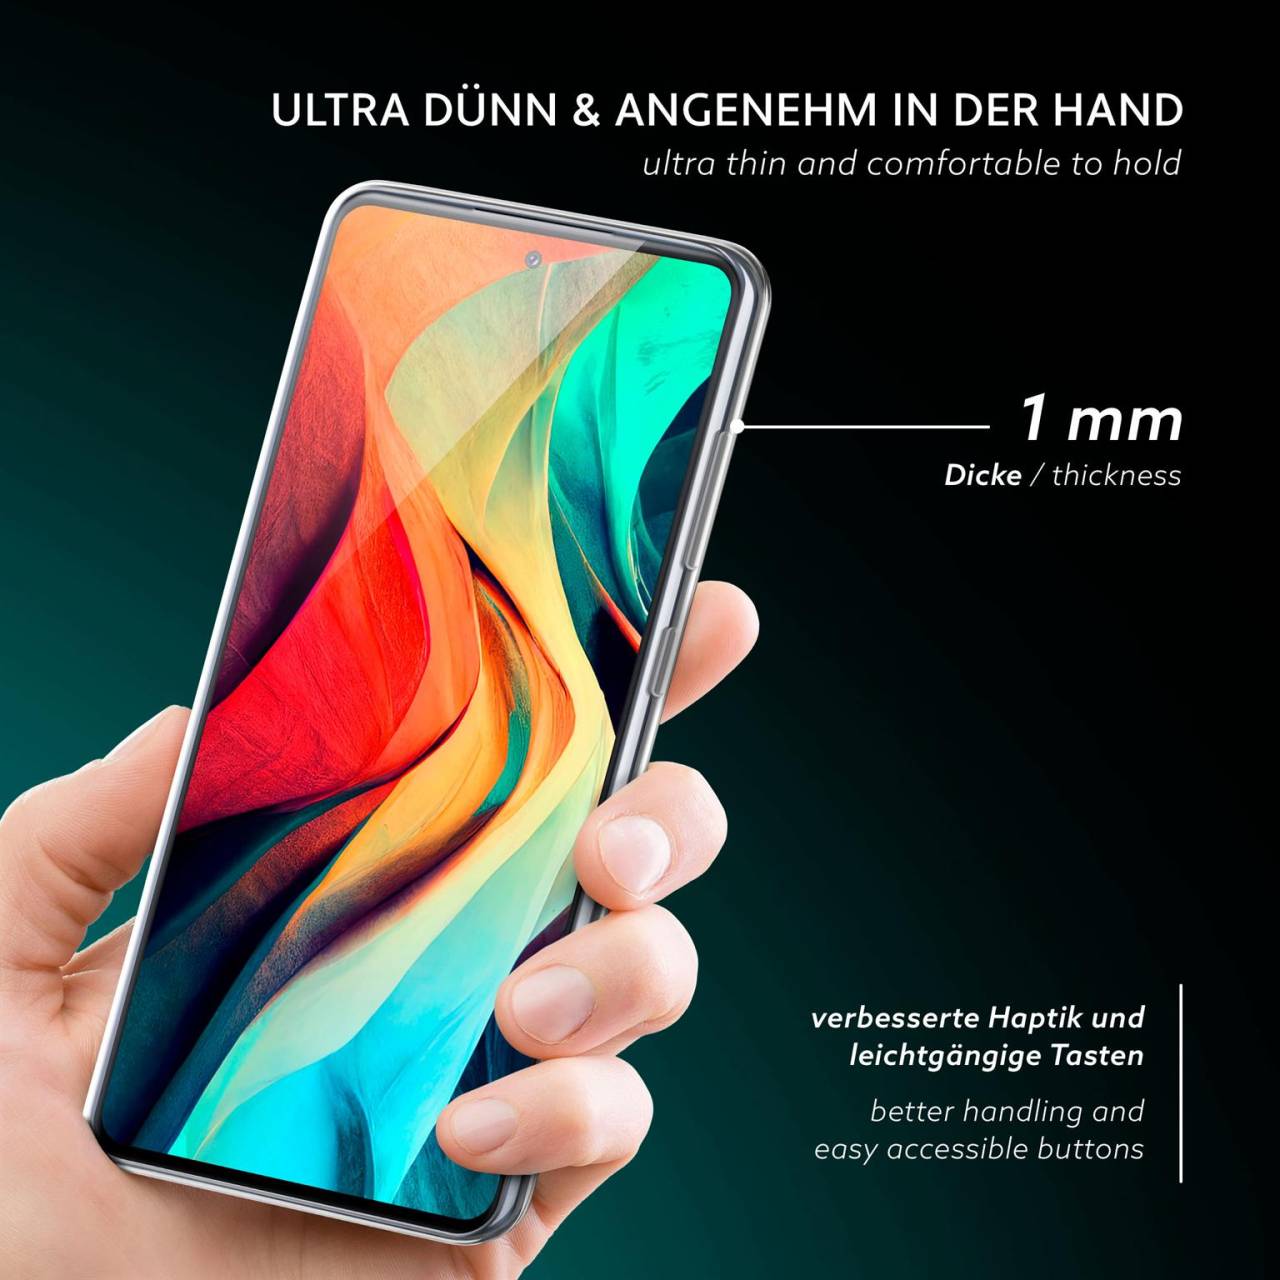 moex Aero Case für Samsung Galaxy S20 FE – Durchsichtige Hülle aus Silikon, Ultra Slim Handyhülle